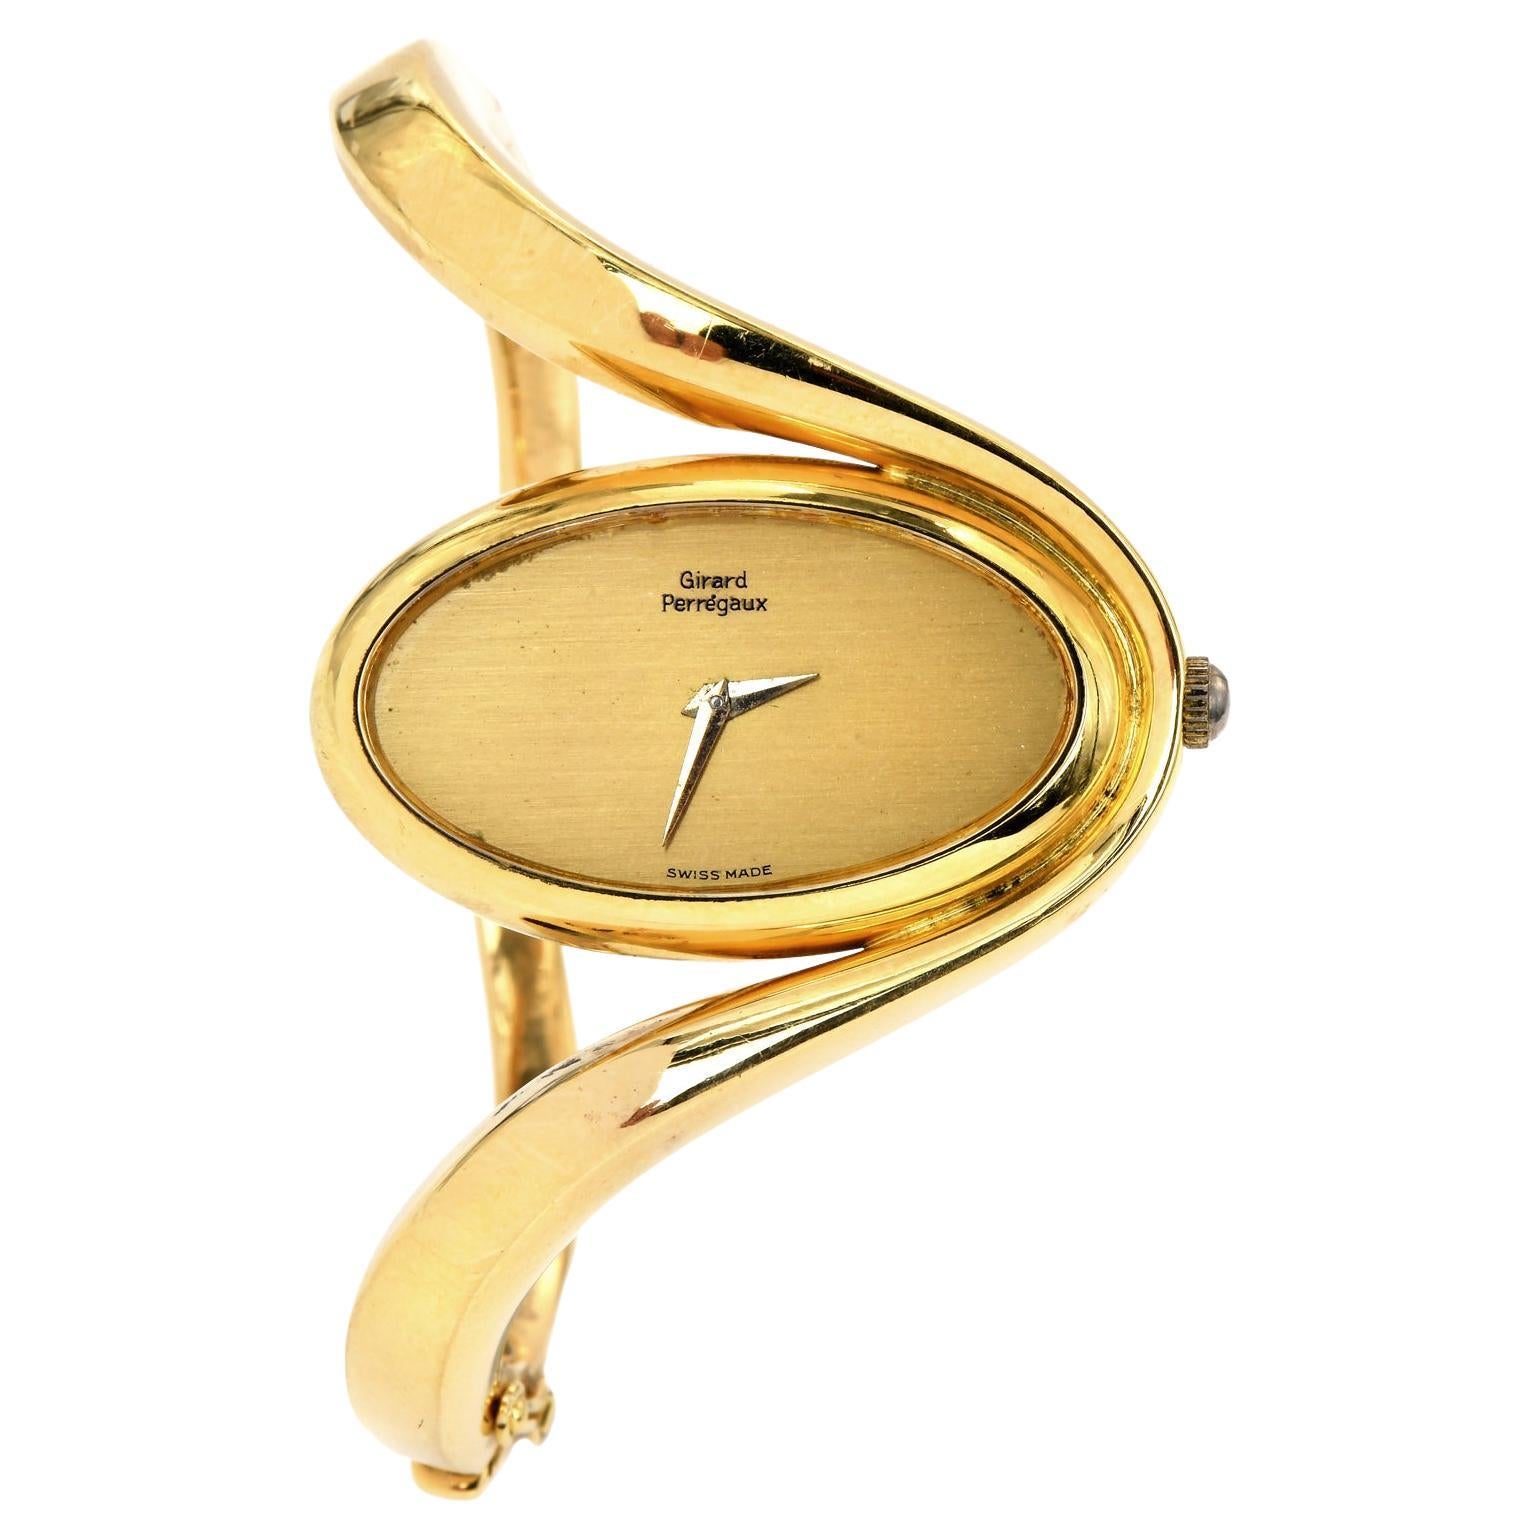 Ovales Girard Perragaux Vintage-Armband aus 18 Karat Gelbgold, 1980er Jahre